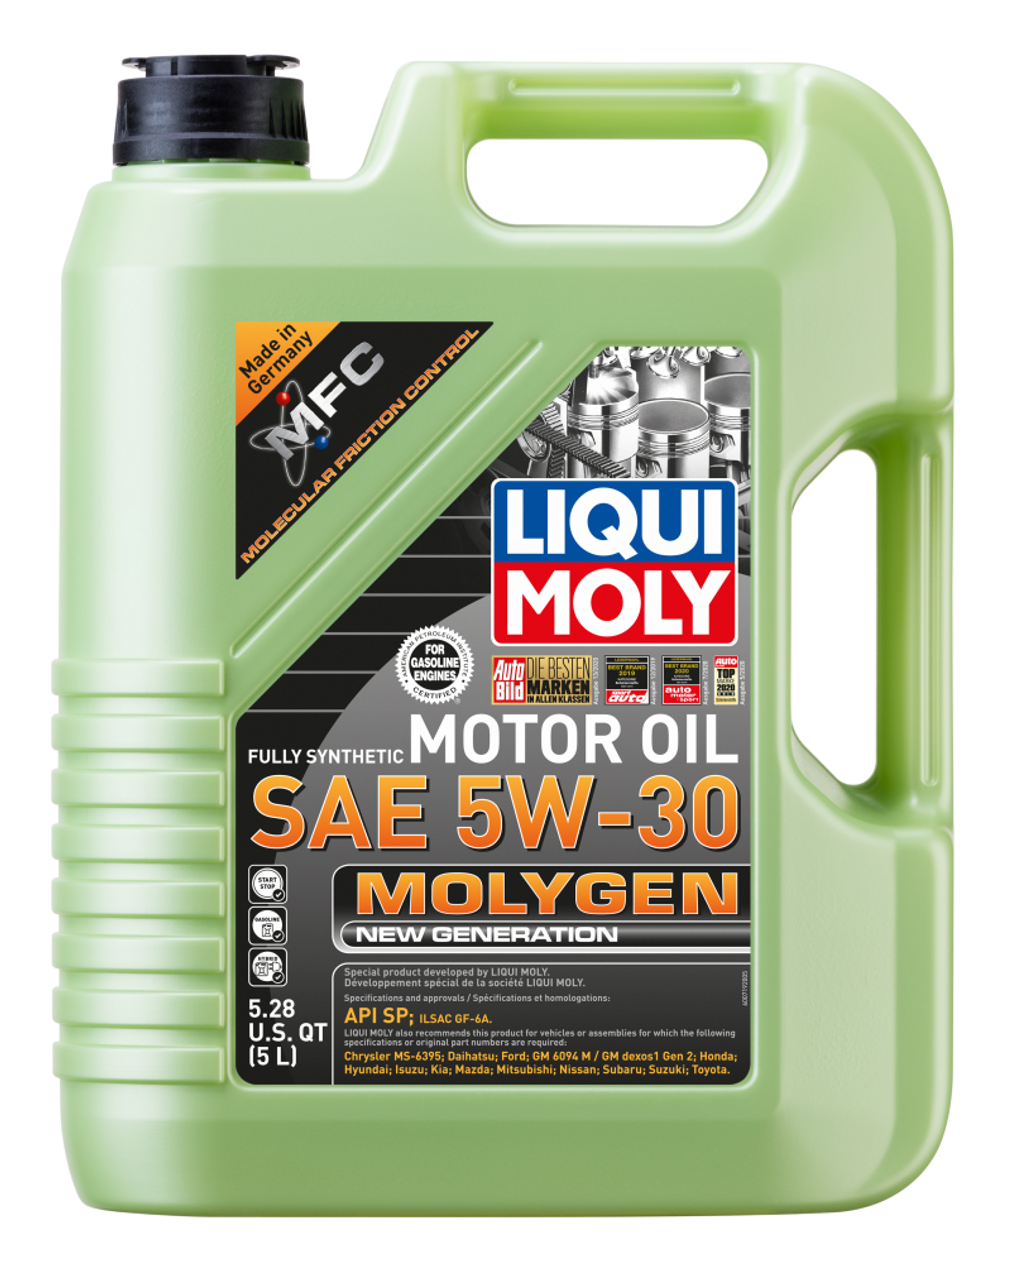 Liqui Moly 5W-30 Molygen New Generation Engine Oil (5L) - Liqui Moly LM20228